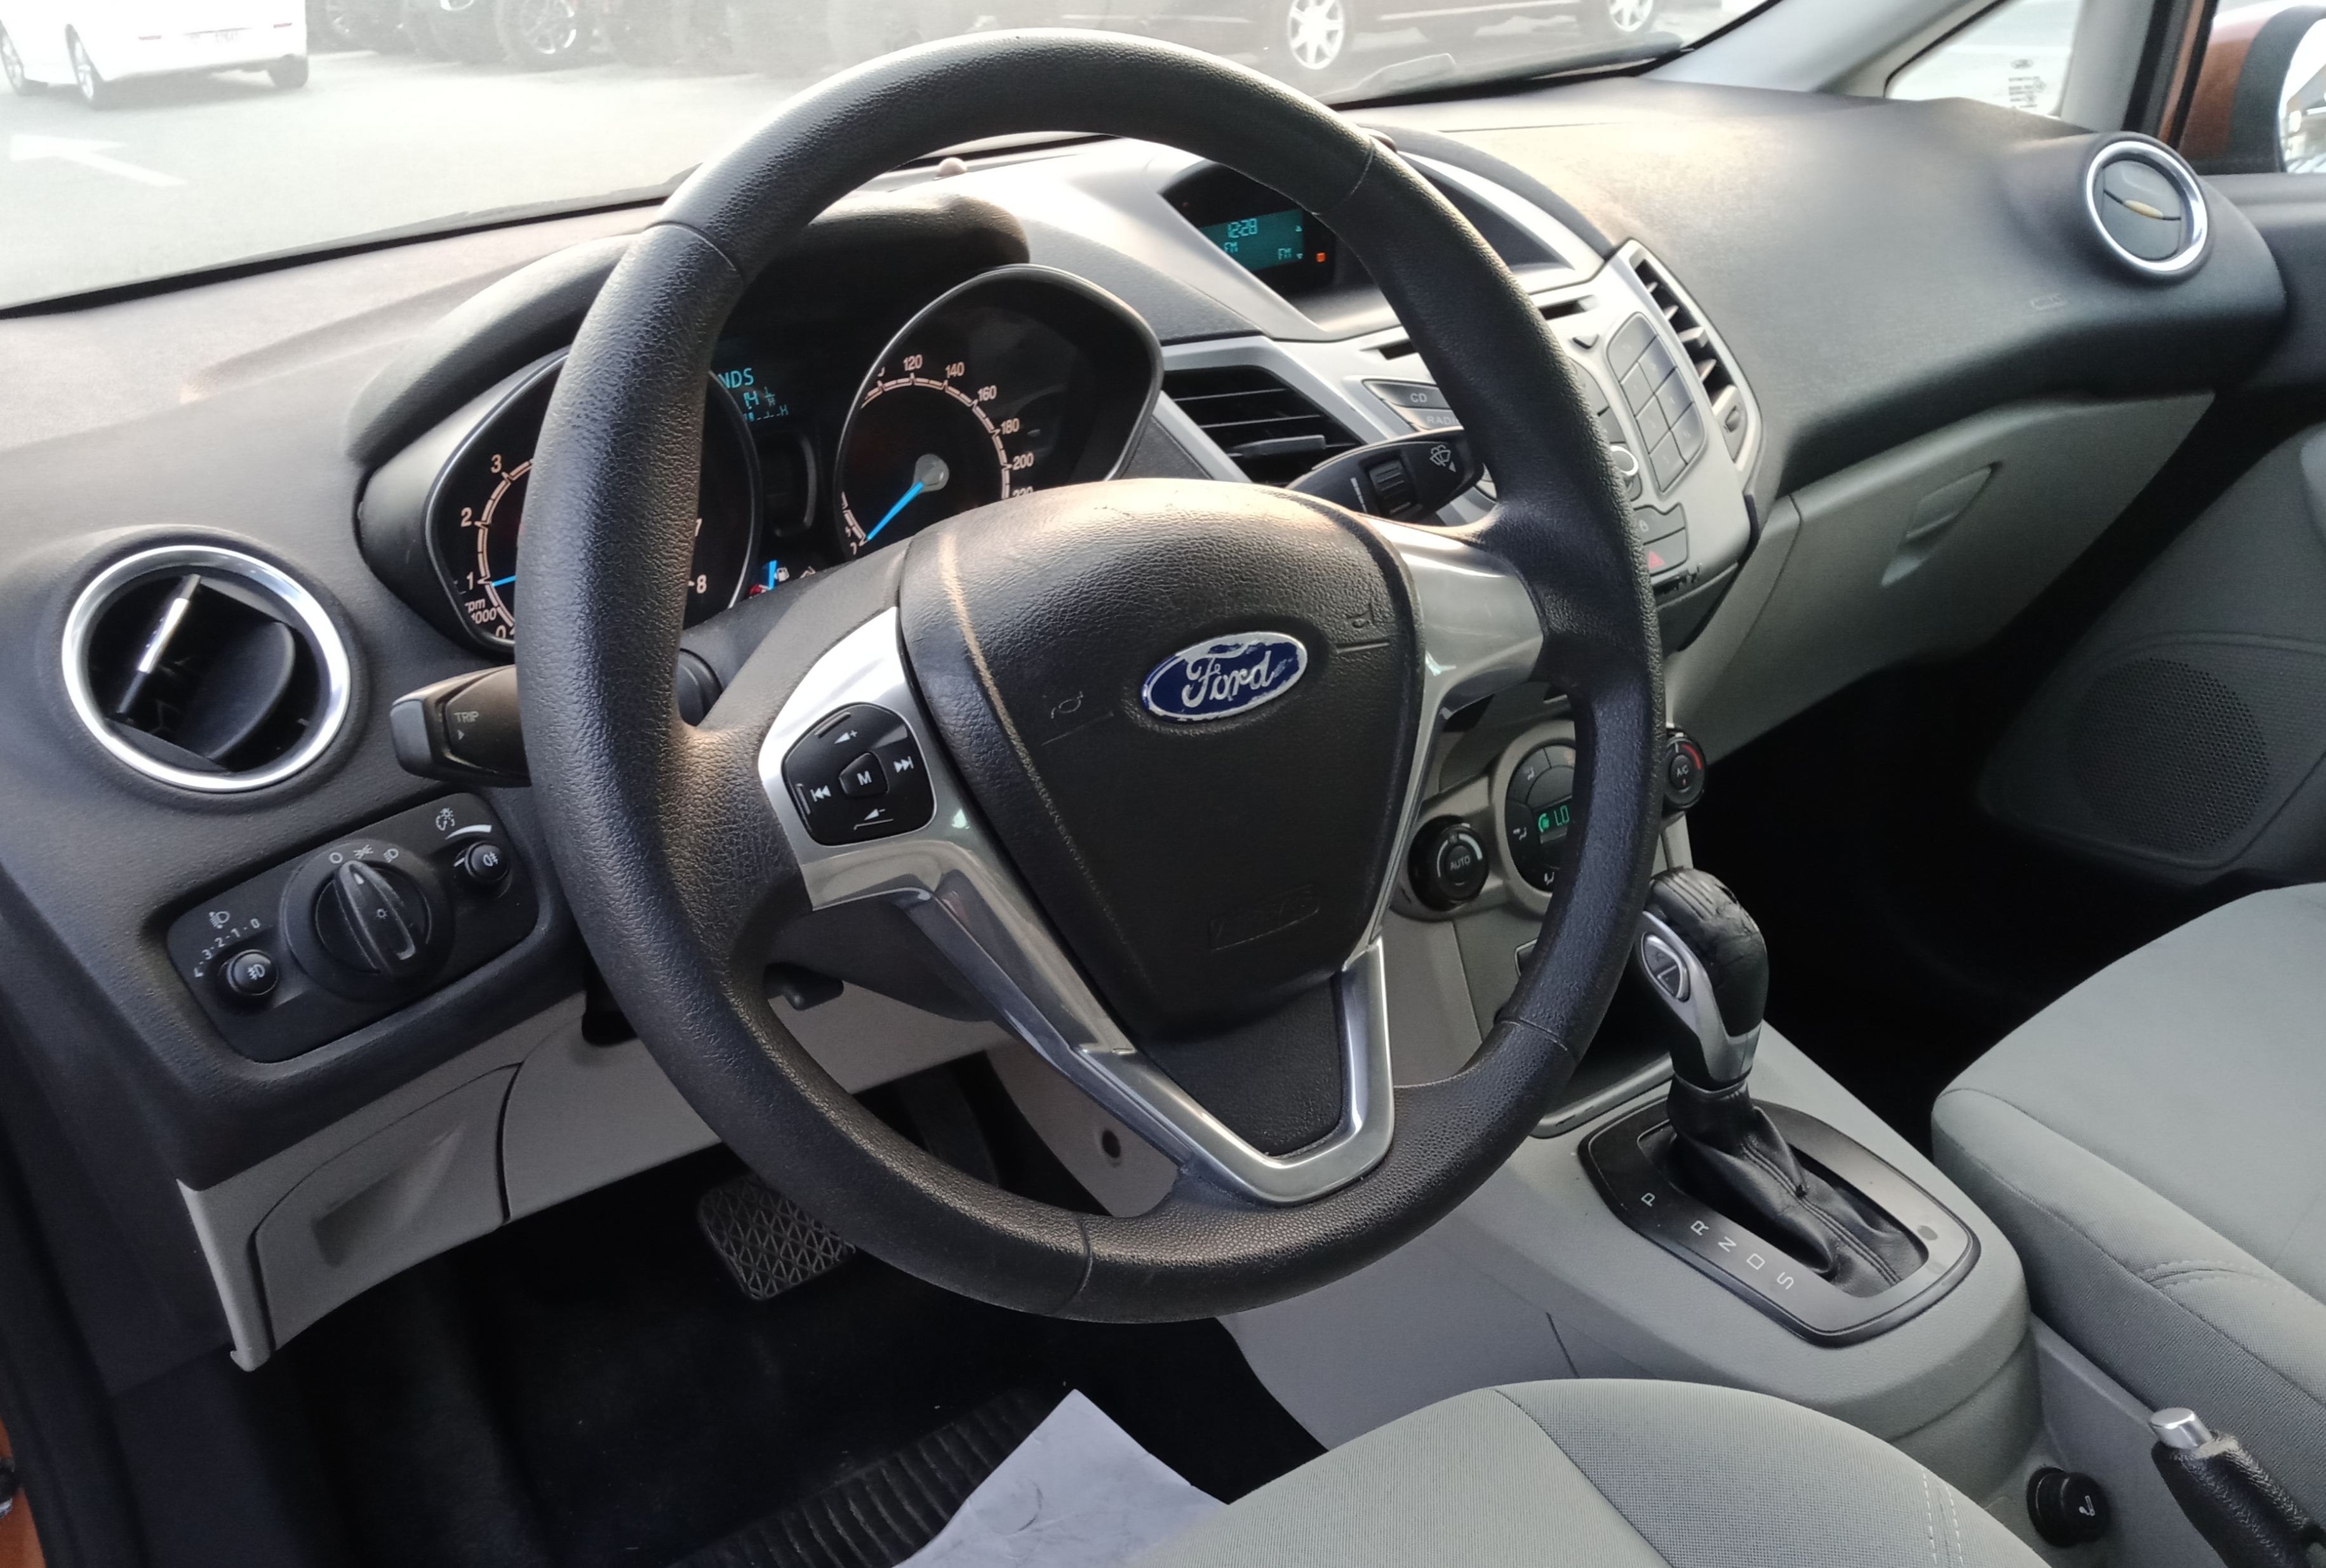 Ford Fiesta V4 1.6L Model 2013-pic_1